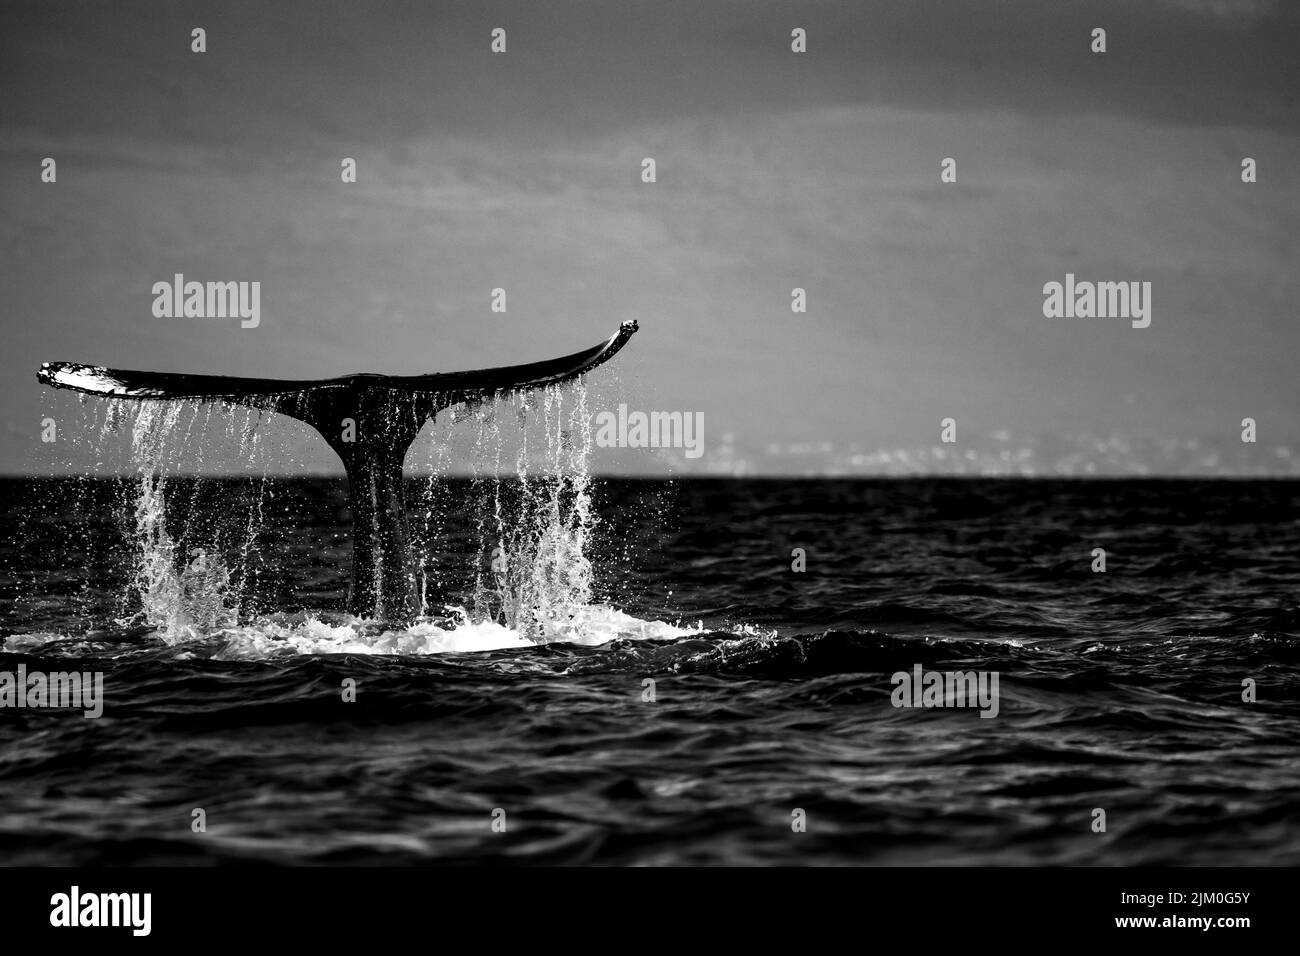 La queue d'une baleine à bosse, le levage de l'eau claire alors que la baleine a tenu sa position à plusieurs reprises, l'eau pour gifler conte près d'une minute Banque D'Images